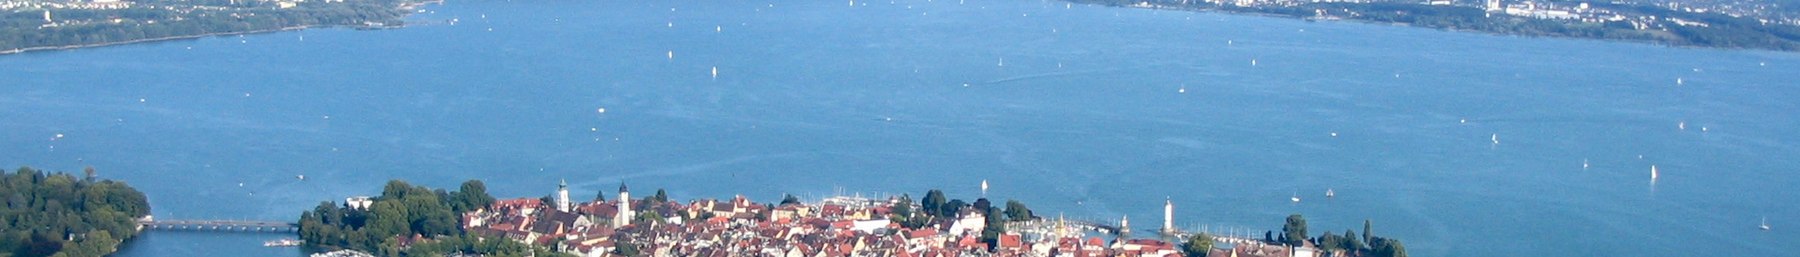 Lake Constance banner.jpg